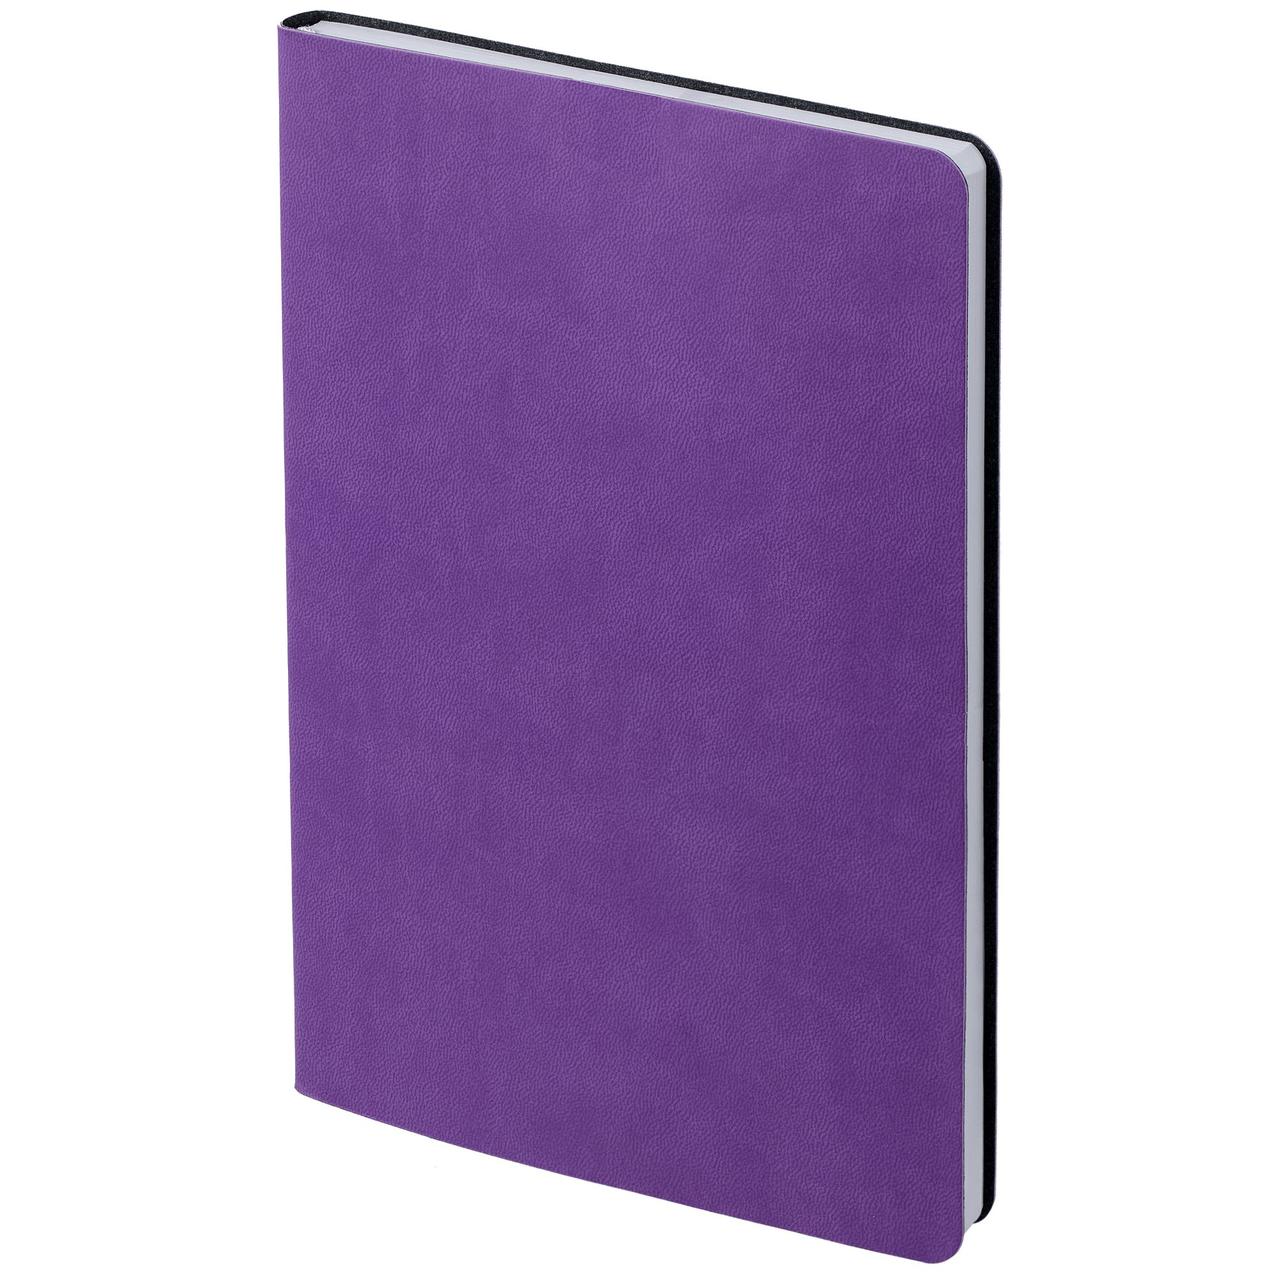 Ежедневник Flex New Brand, недатированный, фиолетовый (артикул 17883.70), фото 1